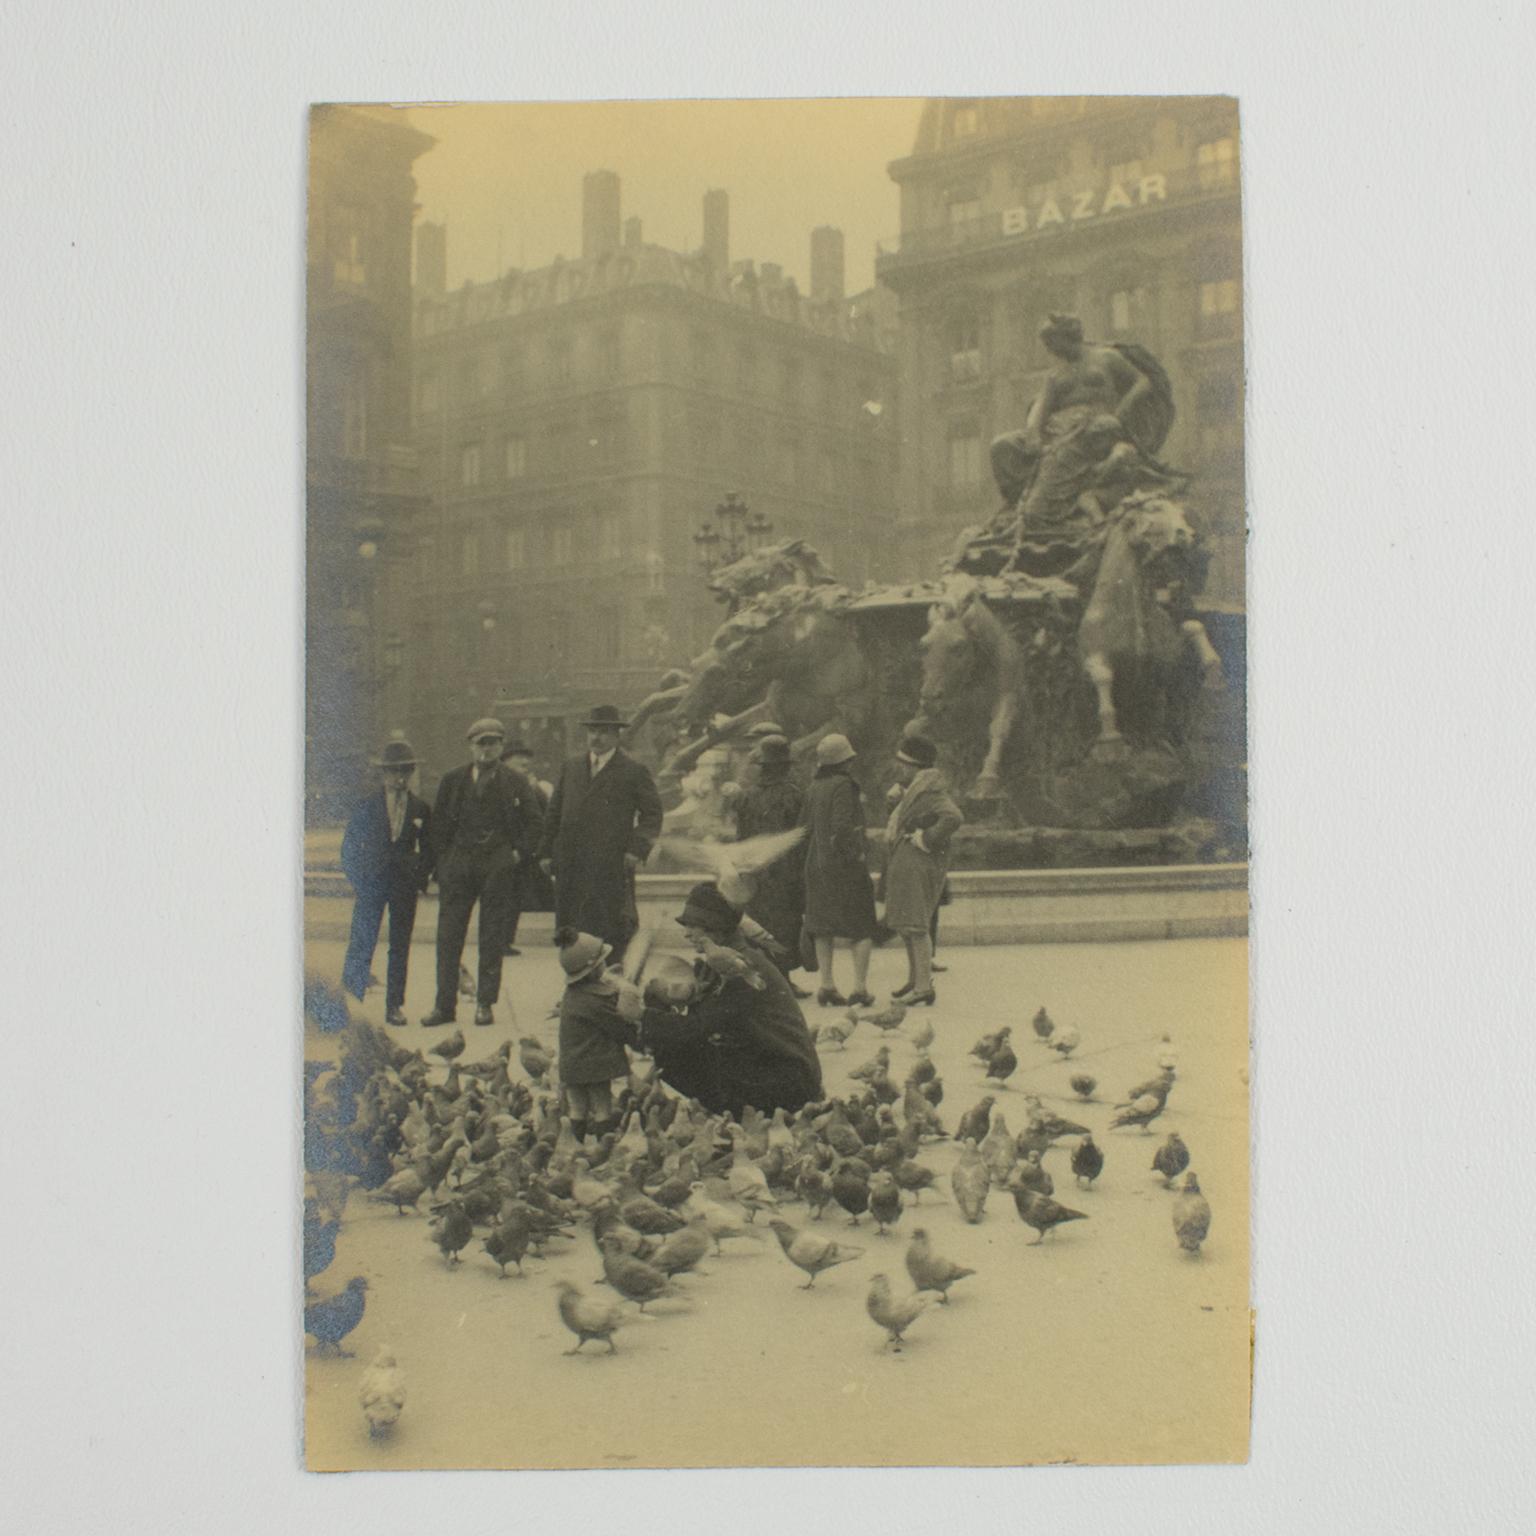 Pigmente beim Futter in Lyon, Frankreich 1927, Silber-Gelatine-Schwarz-Weiß-Fotografie (Art déco), Photograph, von Unknown